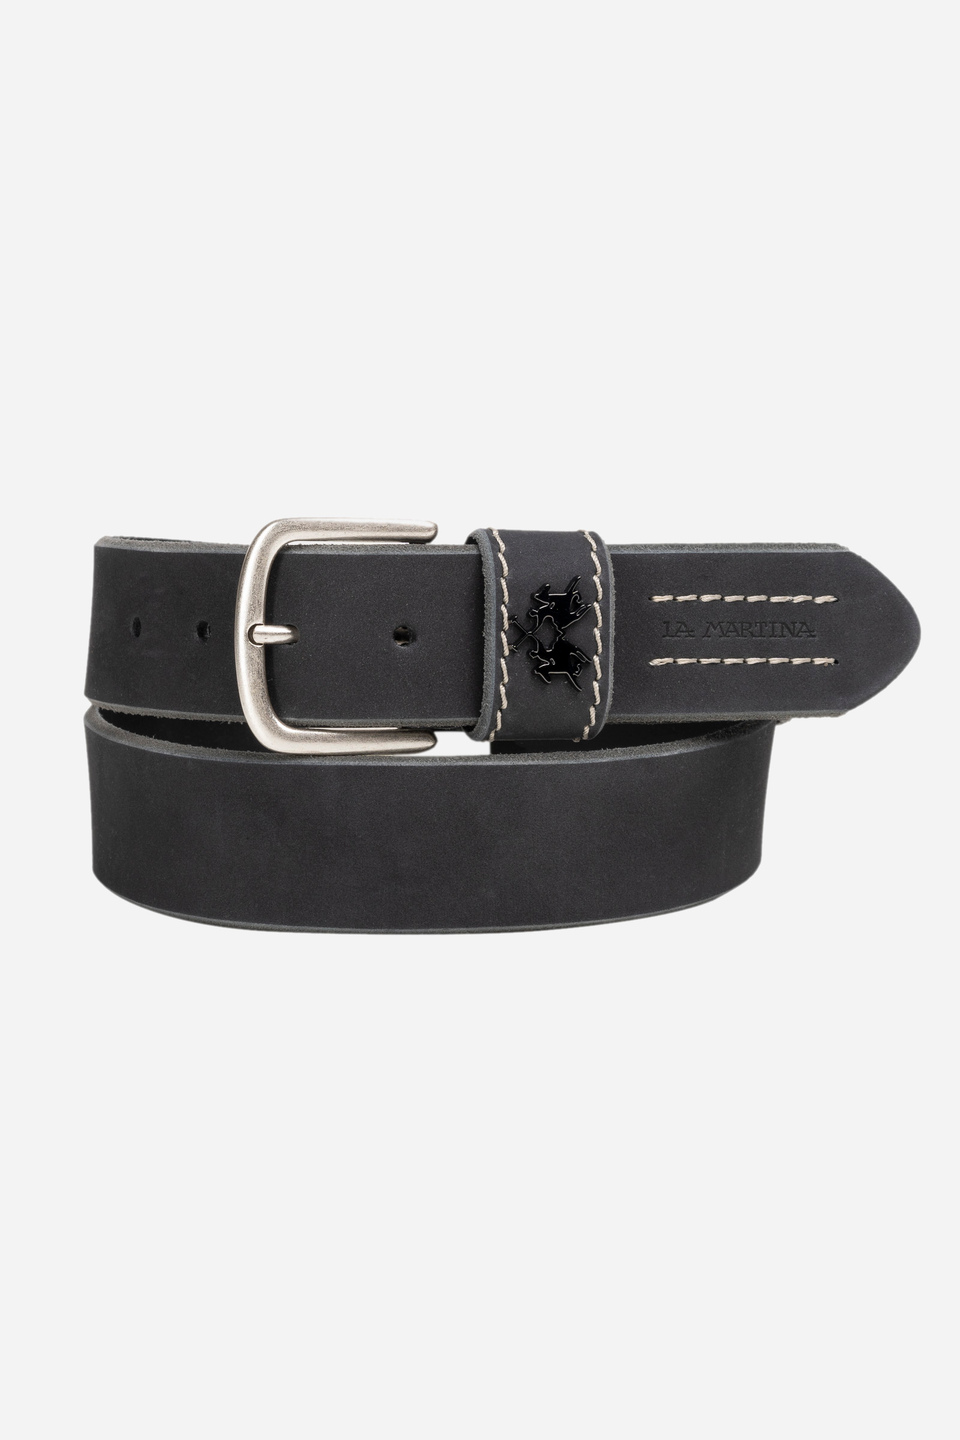 Black leather belt | La Martina - Official Online Shop